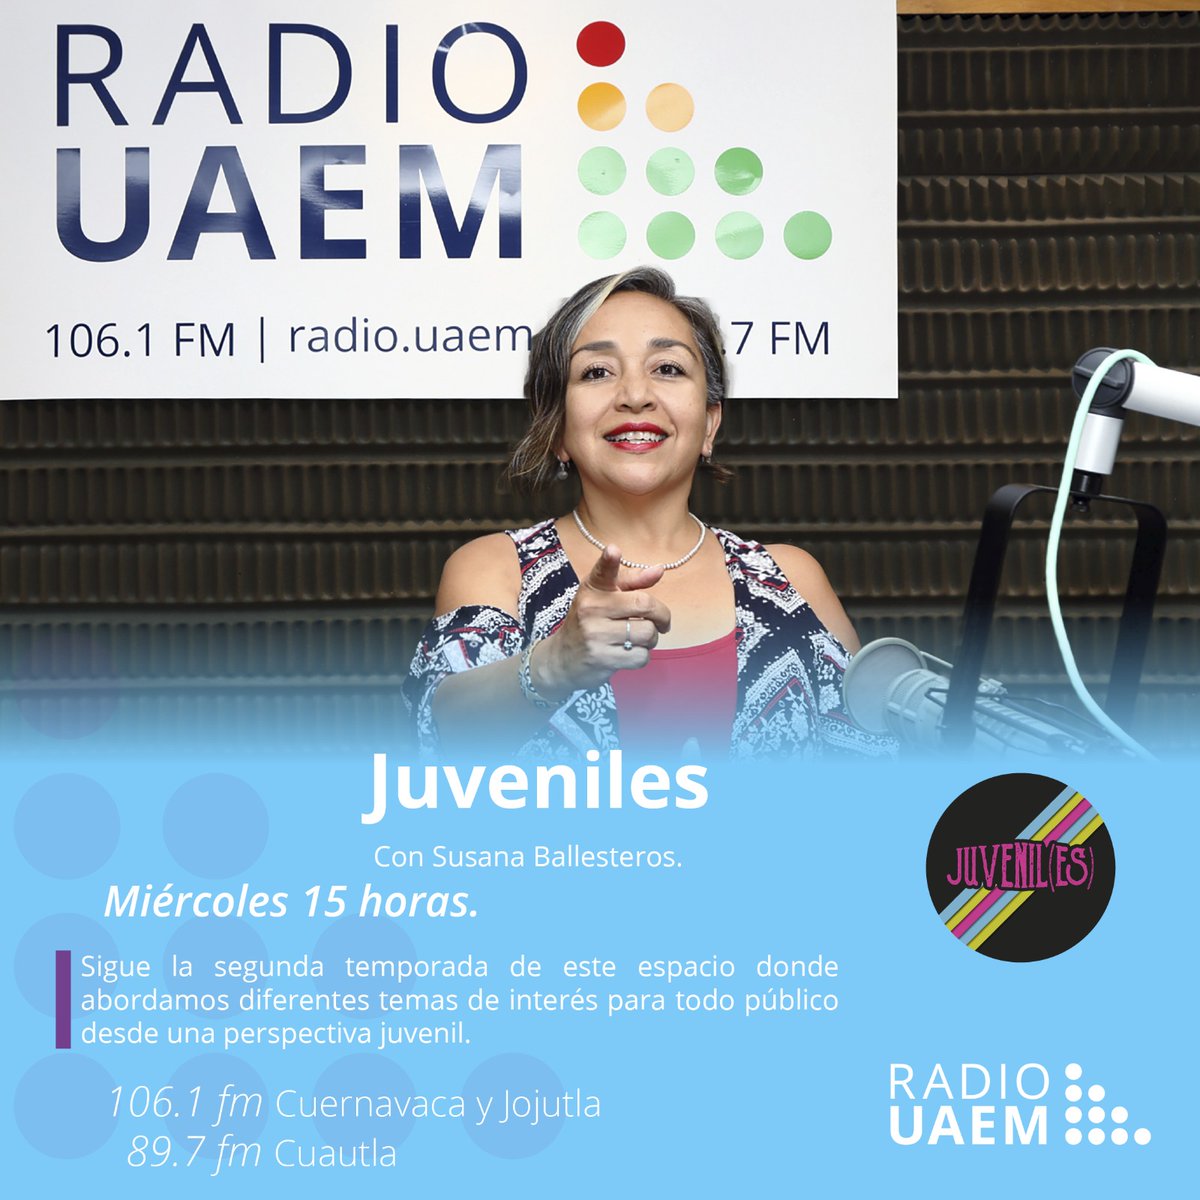 'Juveniles', nuevo programa de @radiouaem con Susana Ballesteros, todos los miércoles a partir de las 15 horas en las frecuencias 106.1 en Cuernavaca y Jojutla, y 89.7 en Cuautla | Consulta la programación en radio.uaem.mx | #SomosRadioPúblicaUniversitaria📻